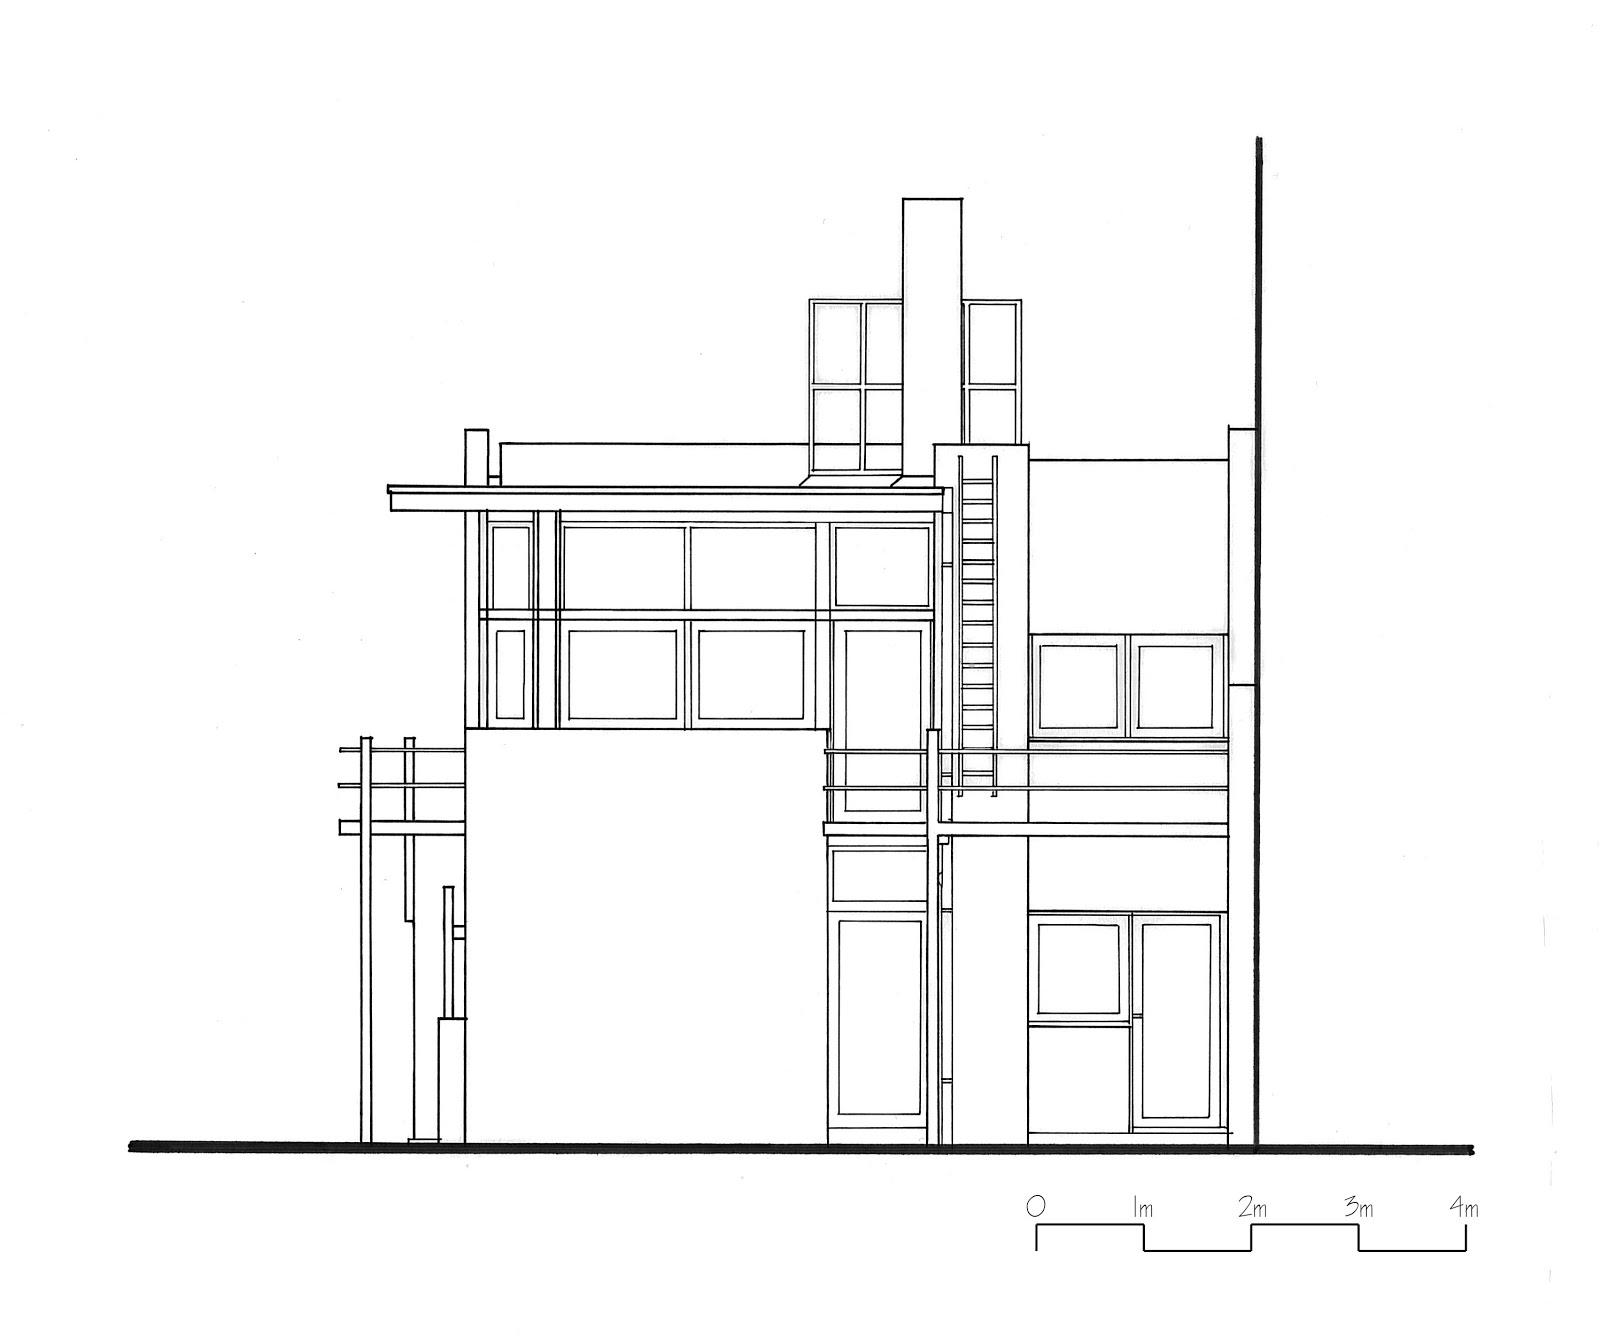 Schroder House Floor Plan Dimensions